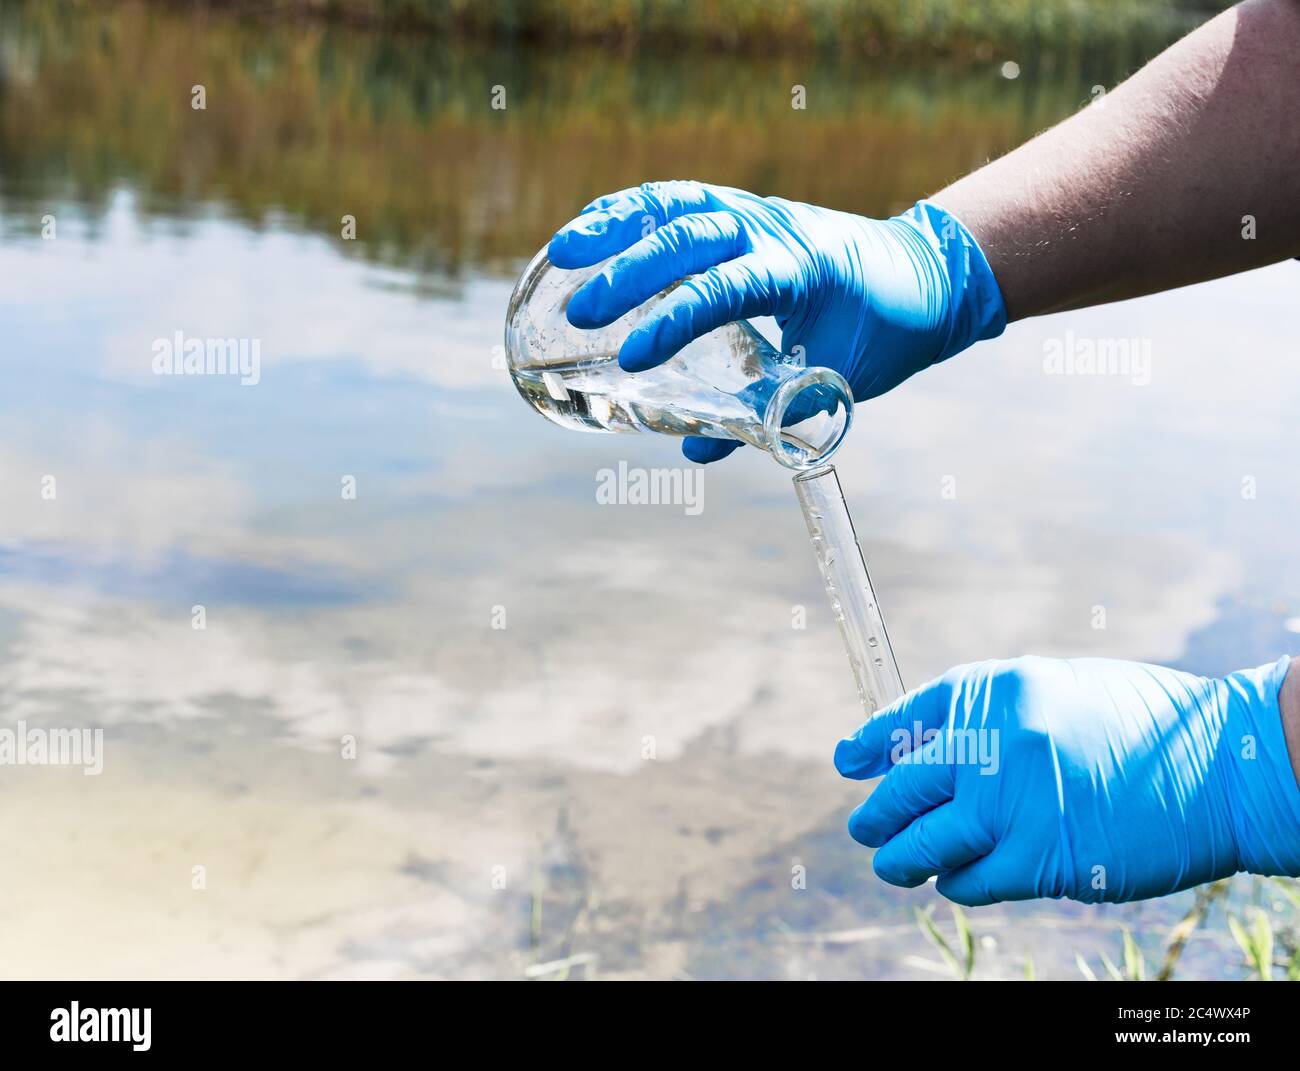 Clôture, vérifier l'échantillon d'eau pour détecter d'autres infections. Main gantée avec un flacon et un tube à essai sur fond de lac, rivière, mer. Pollution de l'écologie, envi Banque D'Images